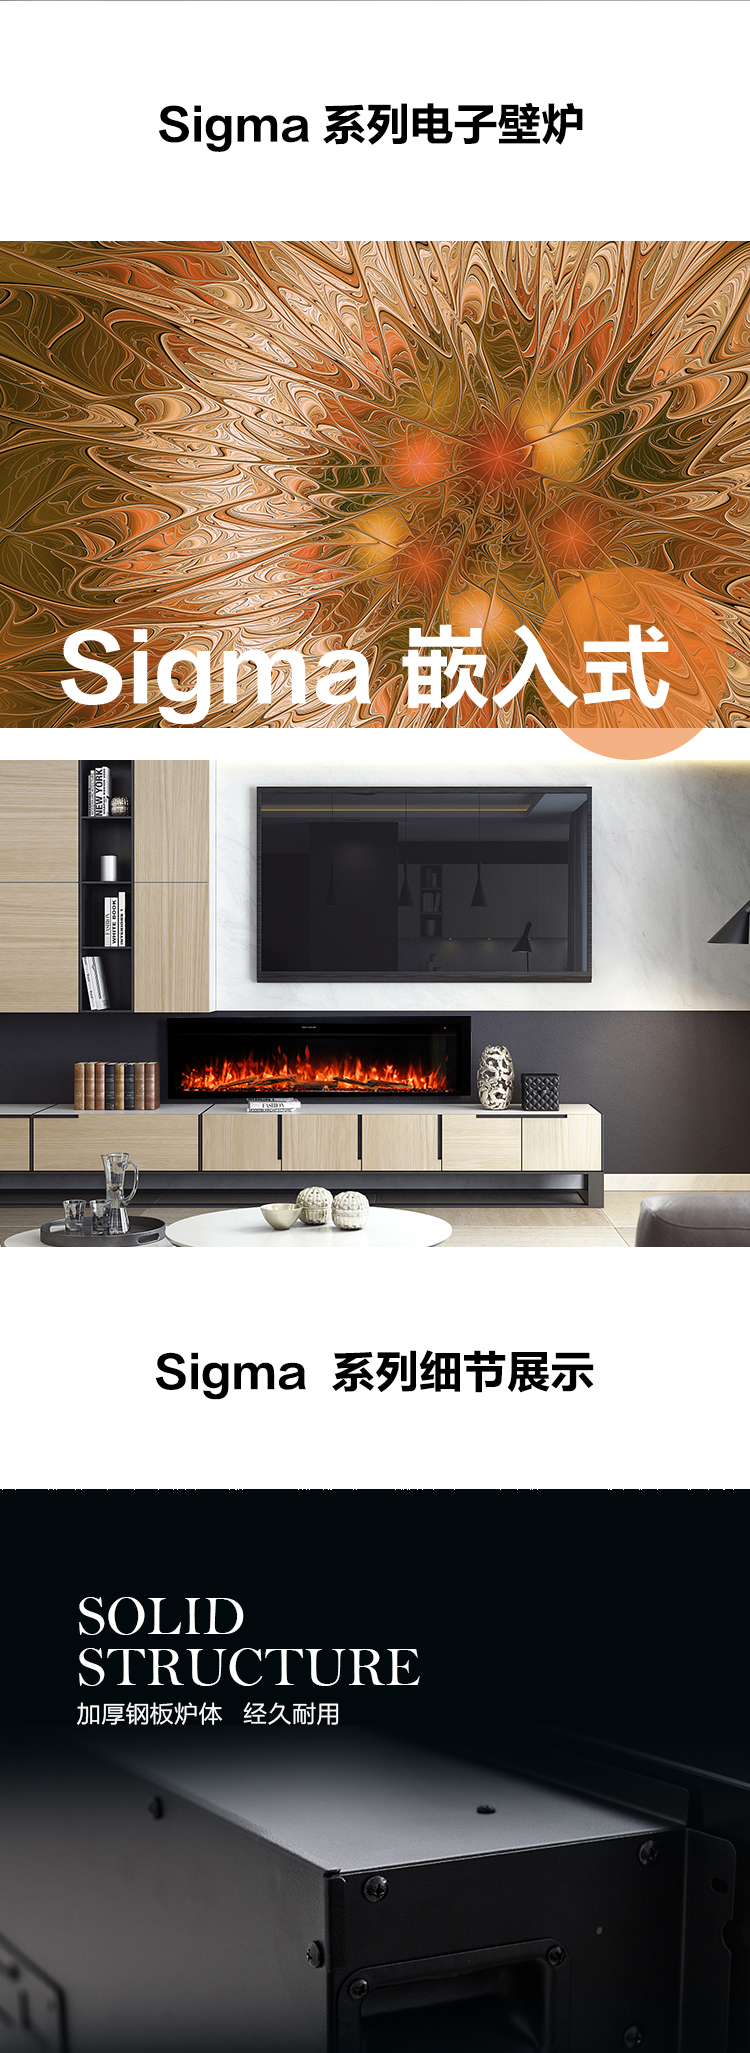 平客客厅假火背景墙装饰电子壁炉-Sigma.jpg